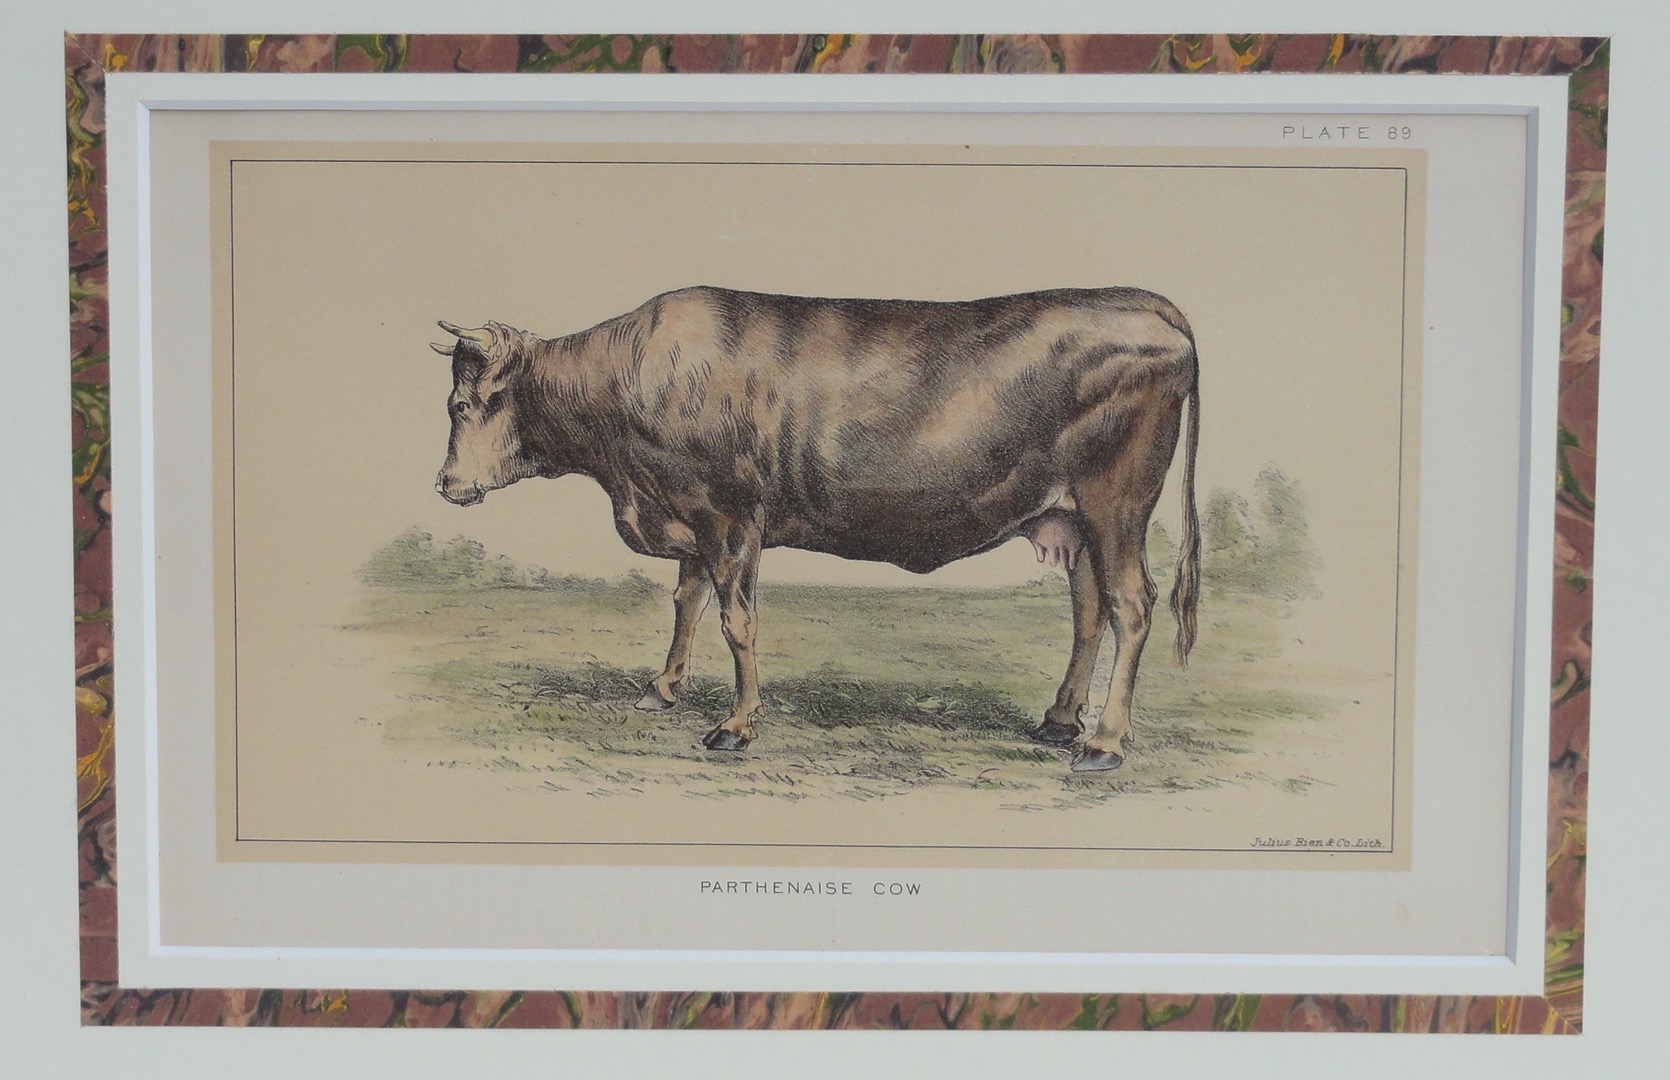 Parthenaise Cow